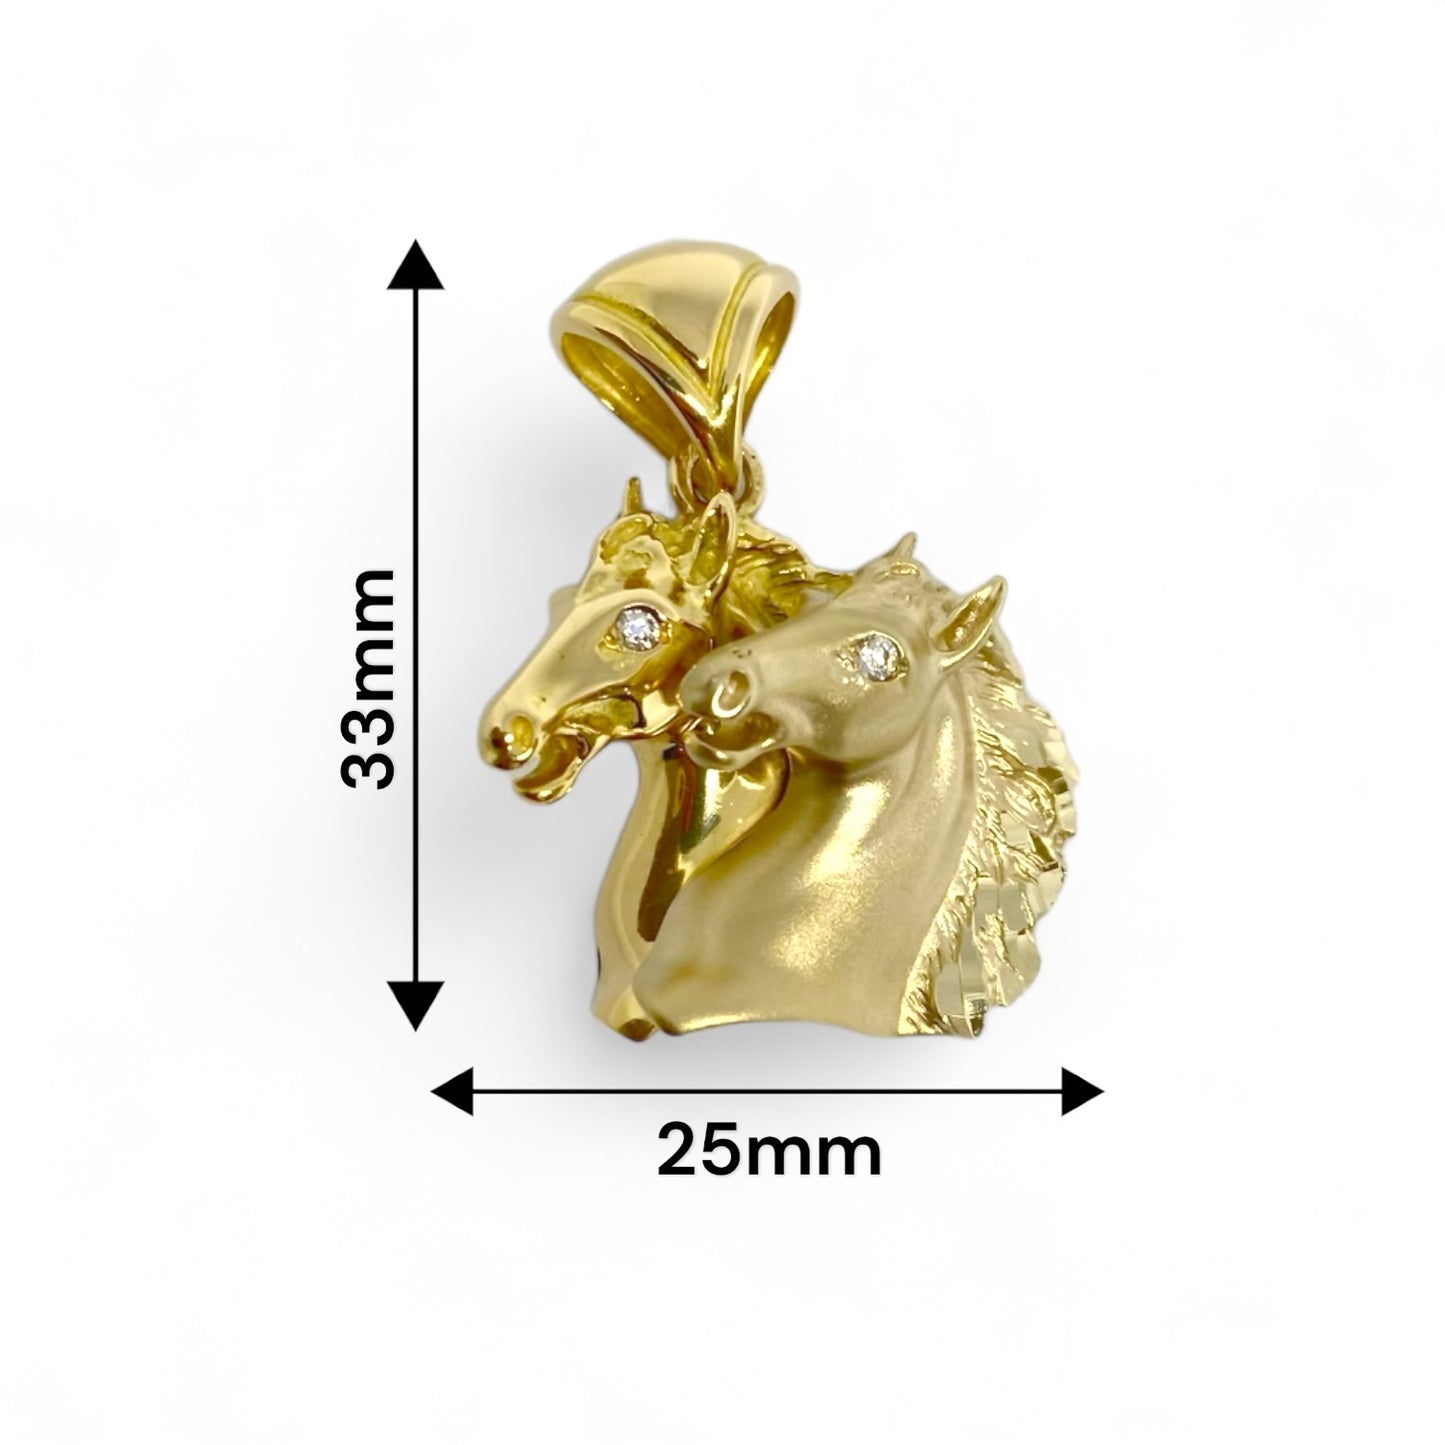 Colgante de Oro Amarillo de 18kt con 2 cabezas de caballo mate y brillante. Detalle de circonitas en los ojos.  Medida: 33mm de alto (con la balia) y 25mm ancho. Peso: 10,67g Material: Oro blanco de 18 kt